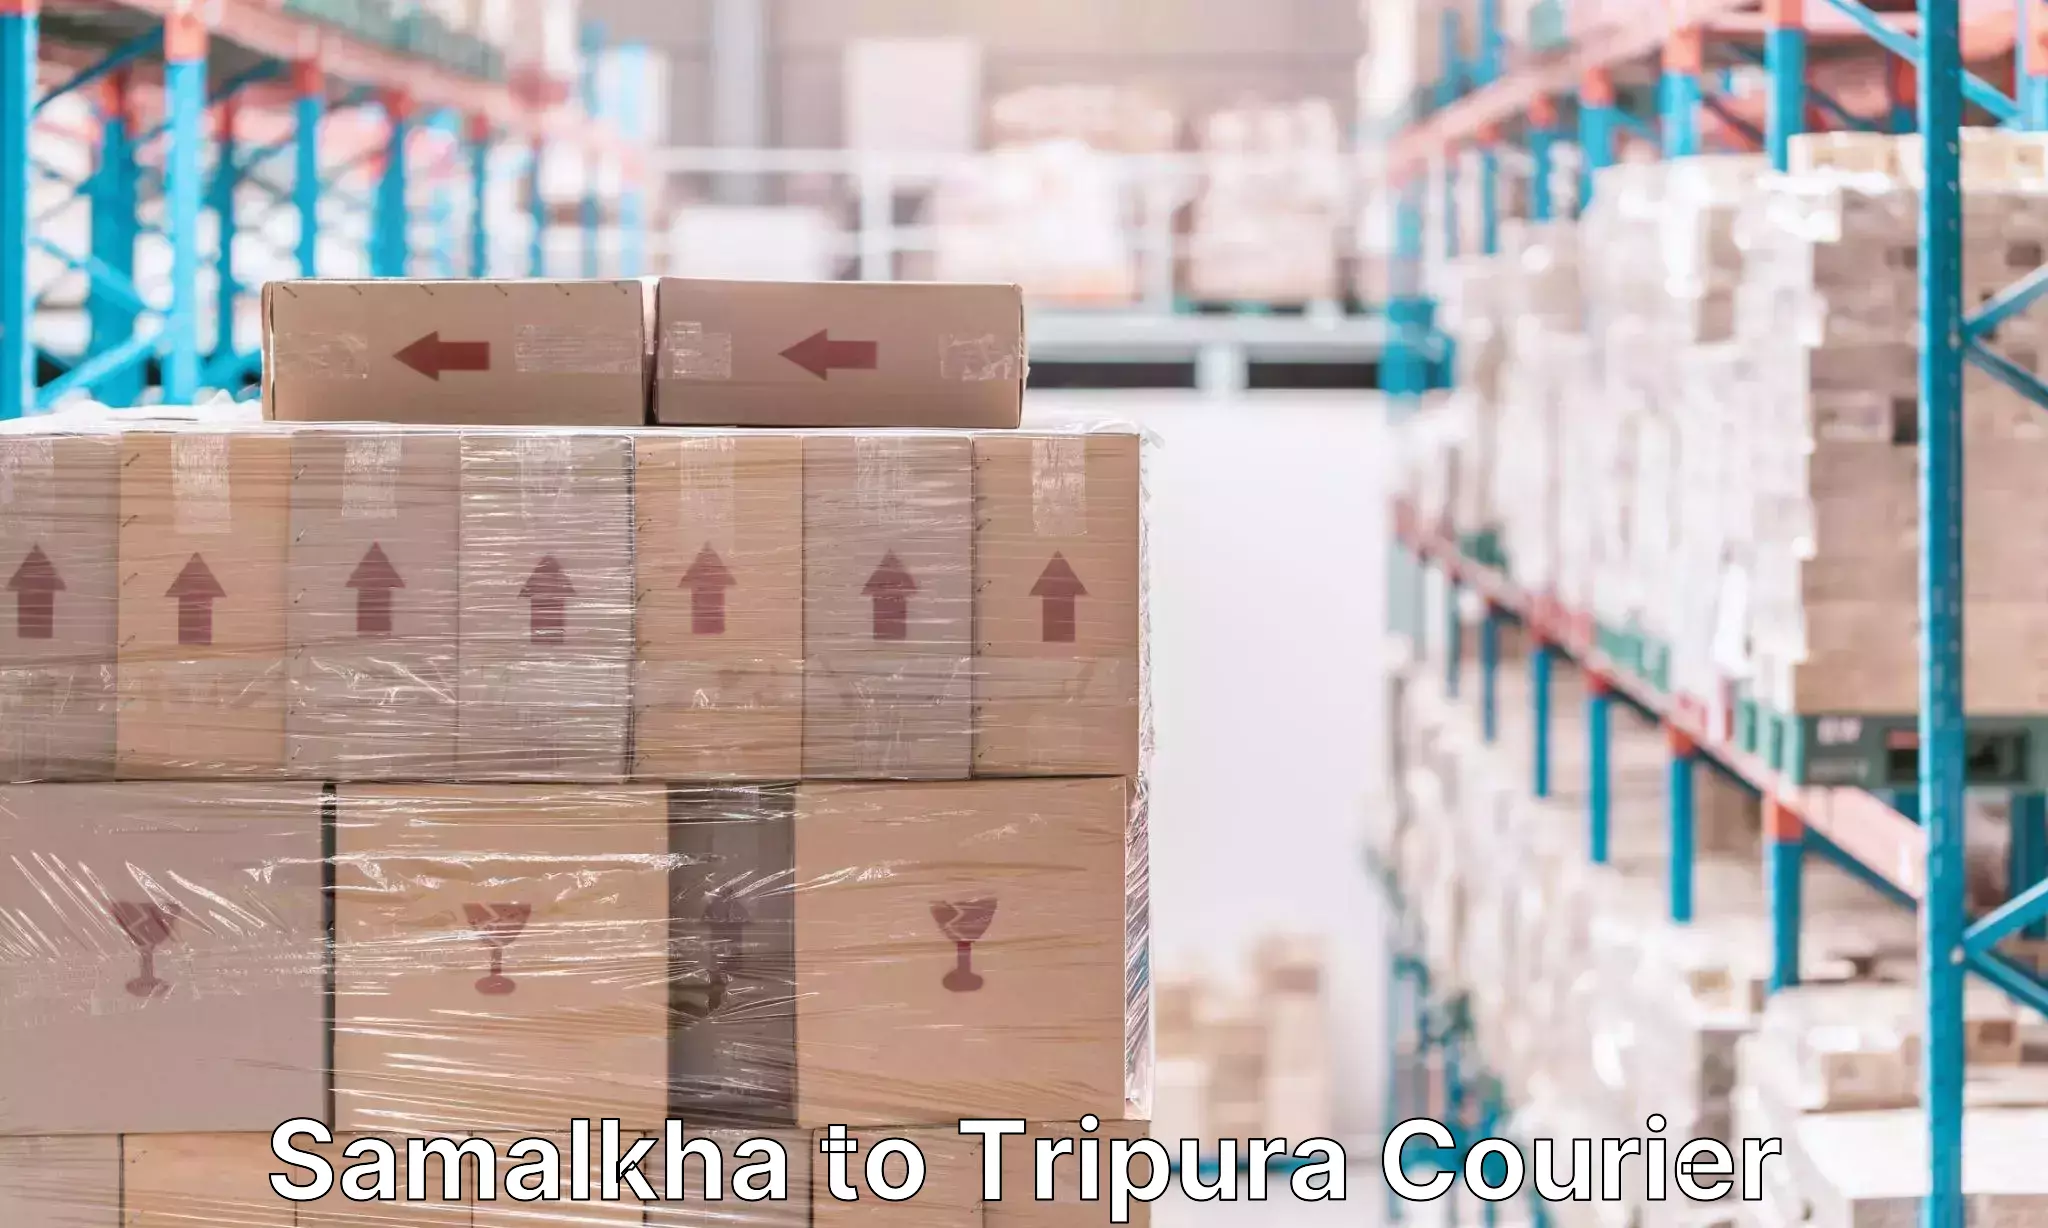 Luggage shipping specialists Samalkha to Tripura